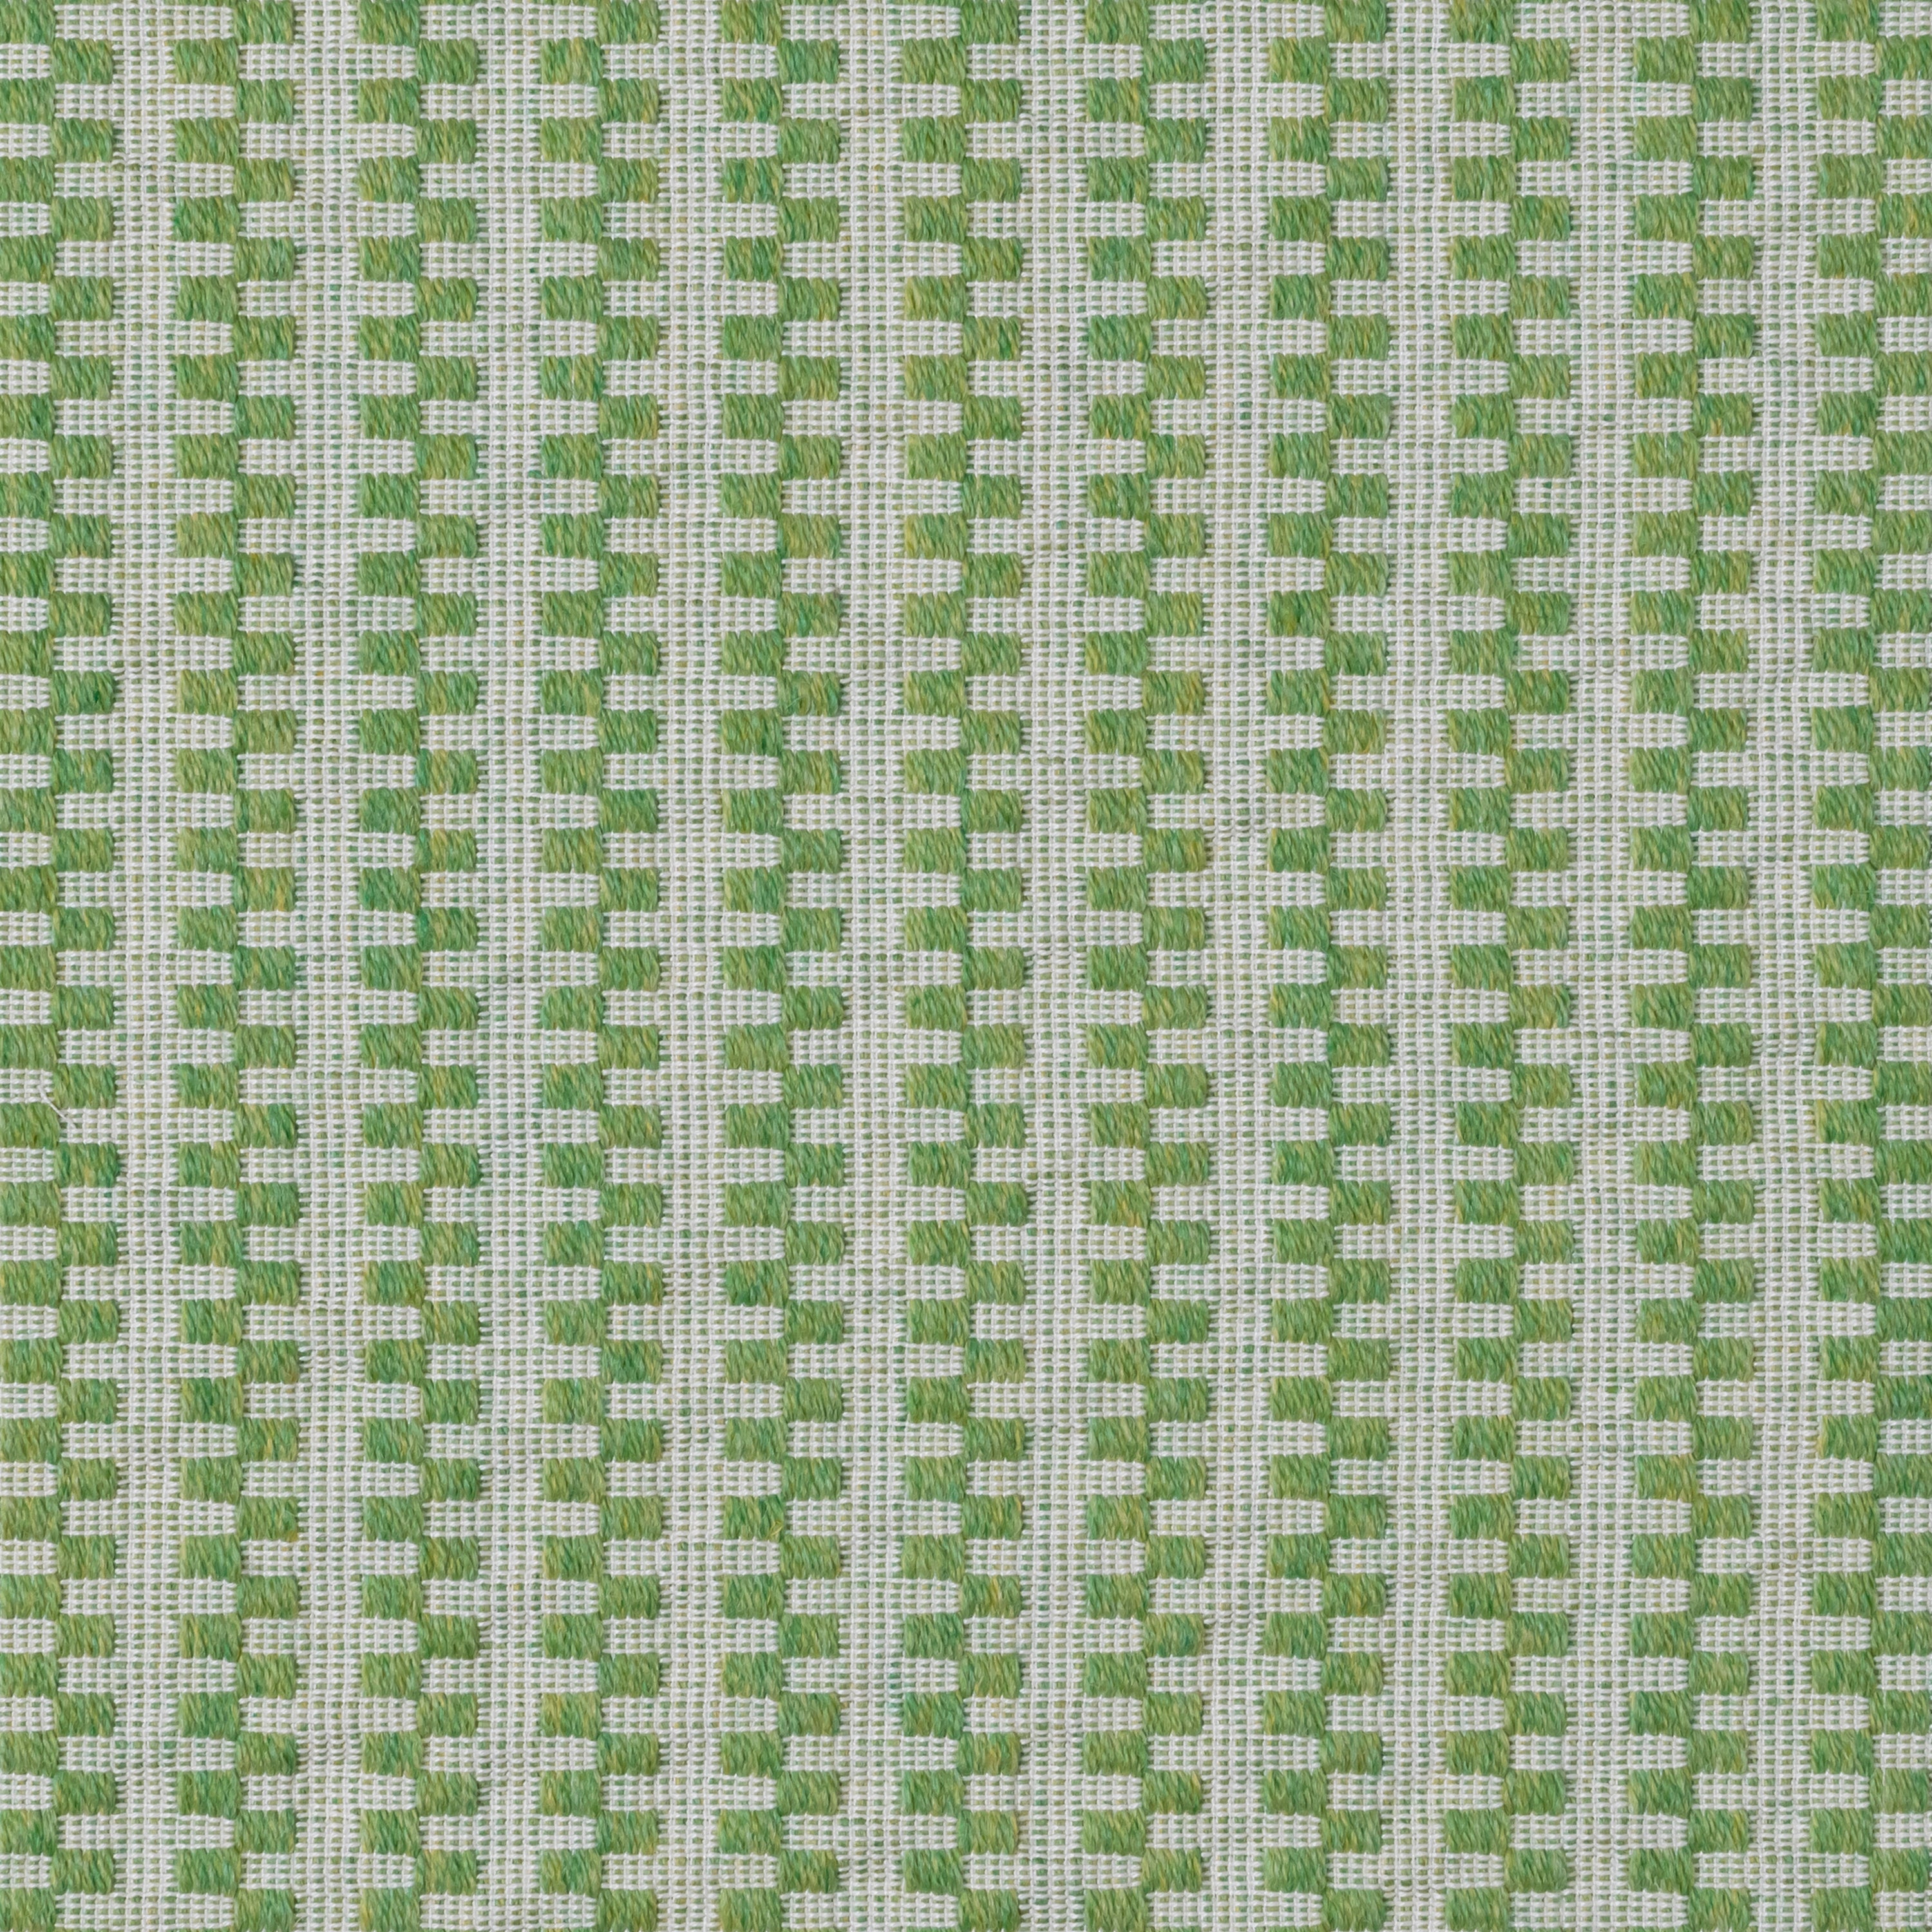 color-name:Grass Green